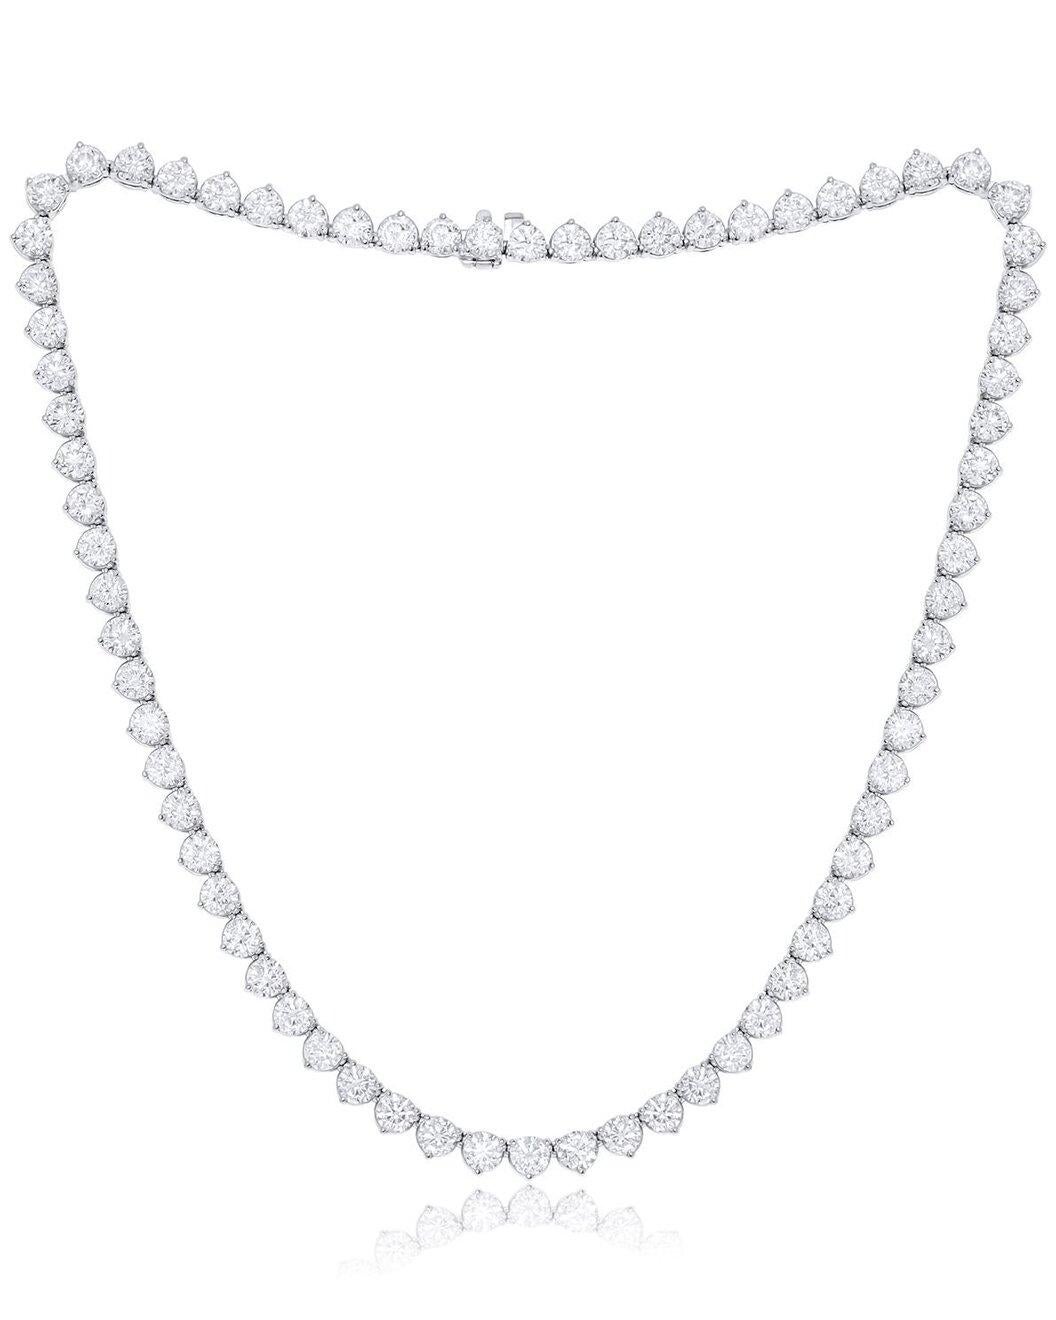 Diamond Necklaces - Loose Grown Diamond